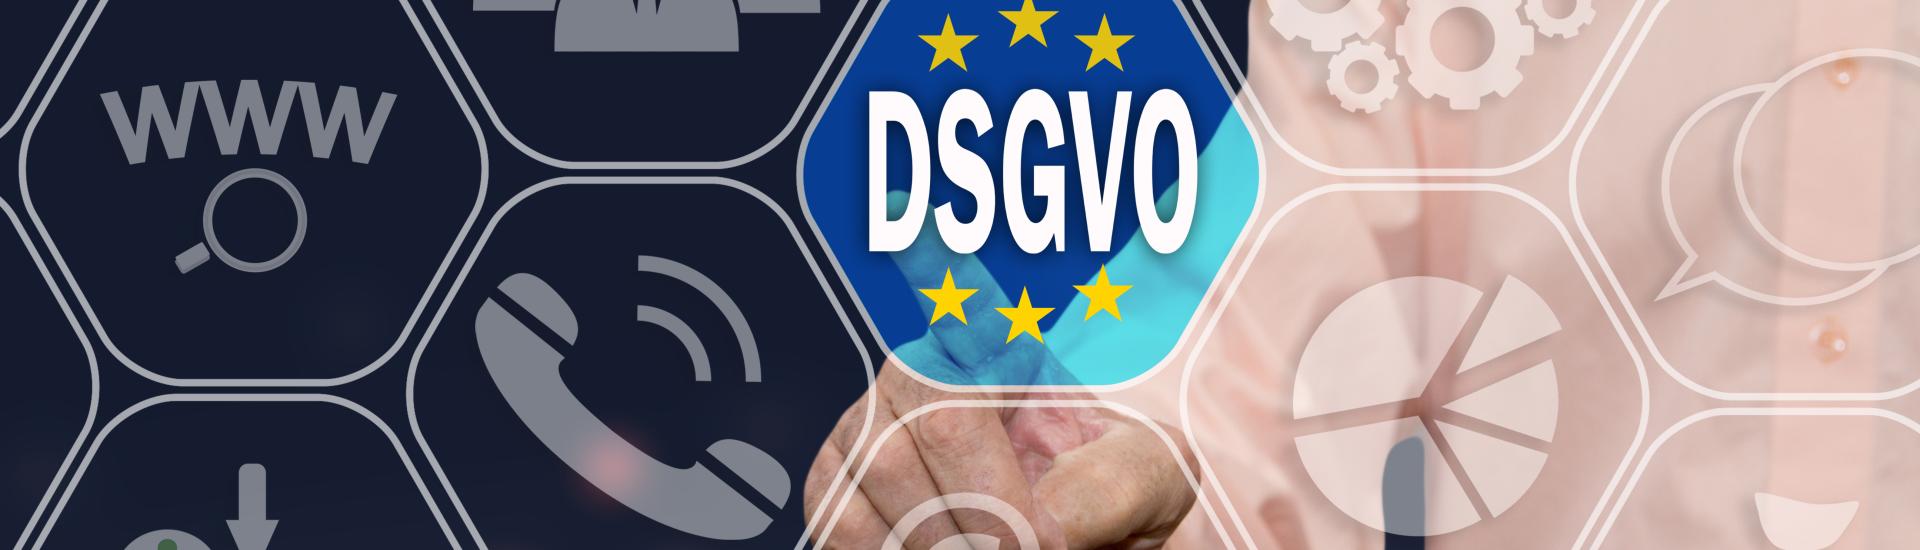 Datenschutzhinweise DSGVO 